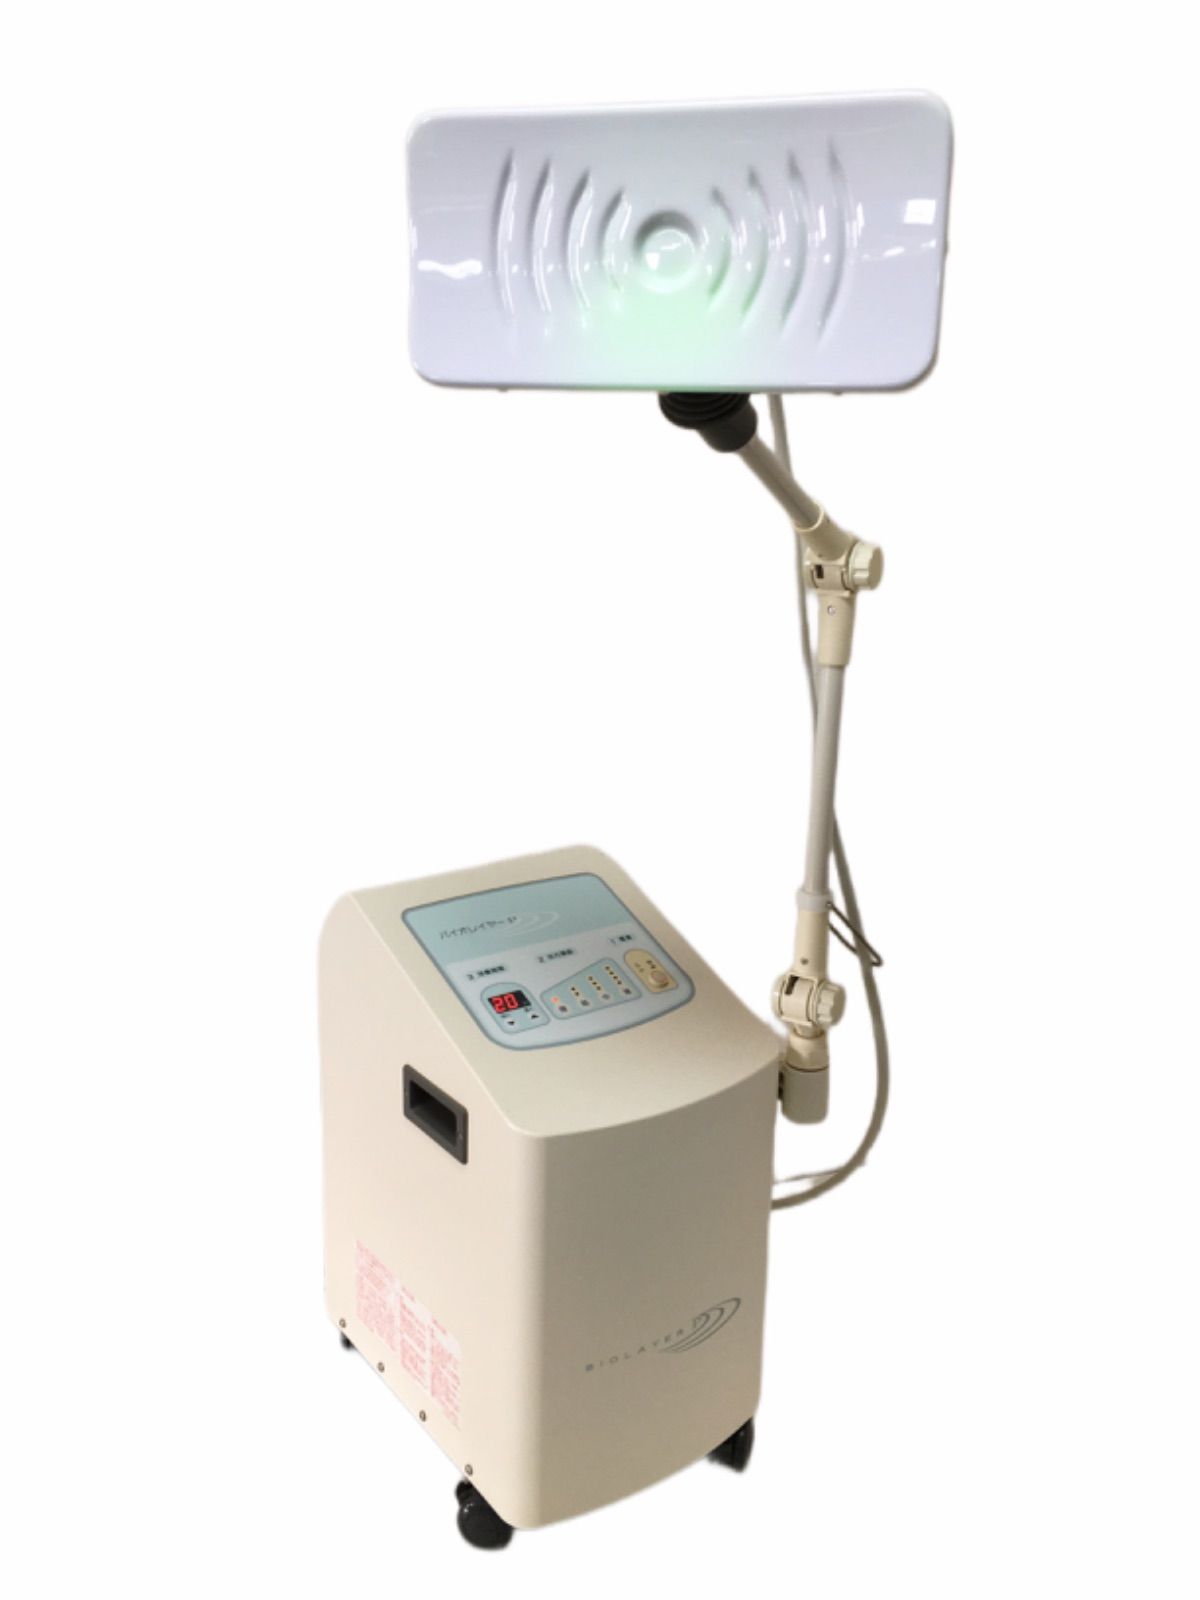 バイオレイヤーP 家庭用超短波治療器 伊藤超短波株式会社 バイオトロン 